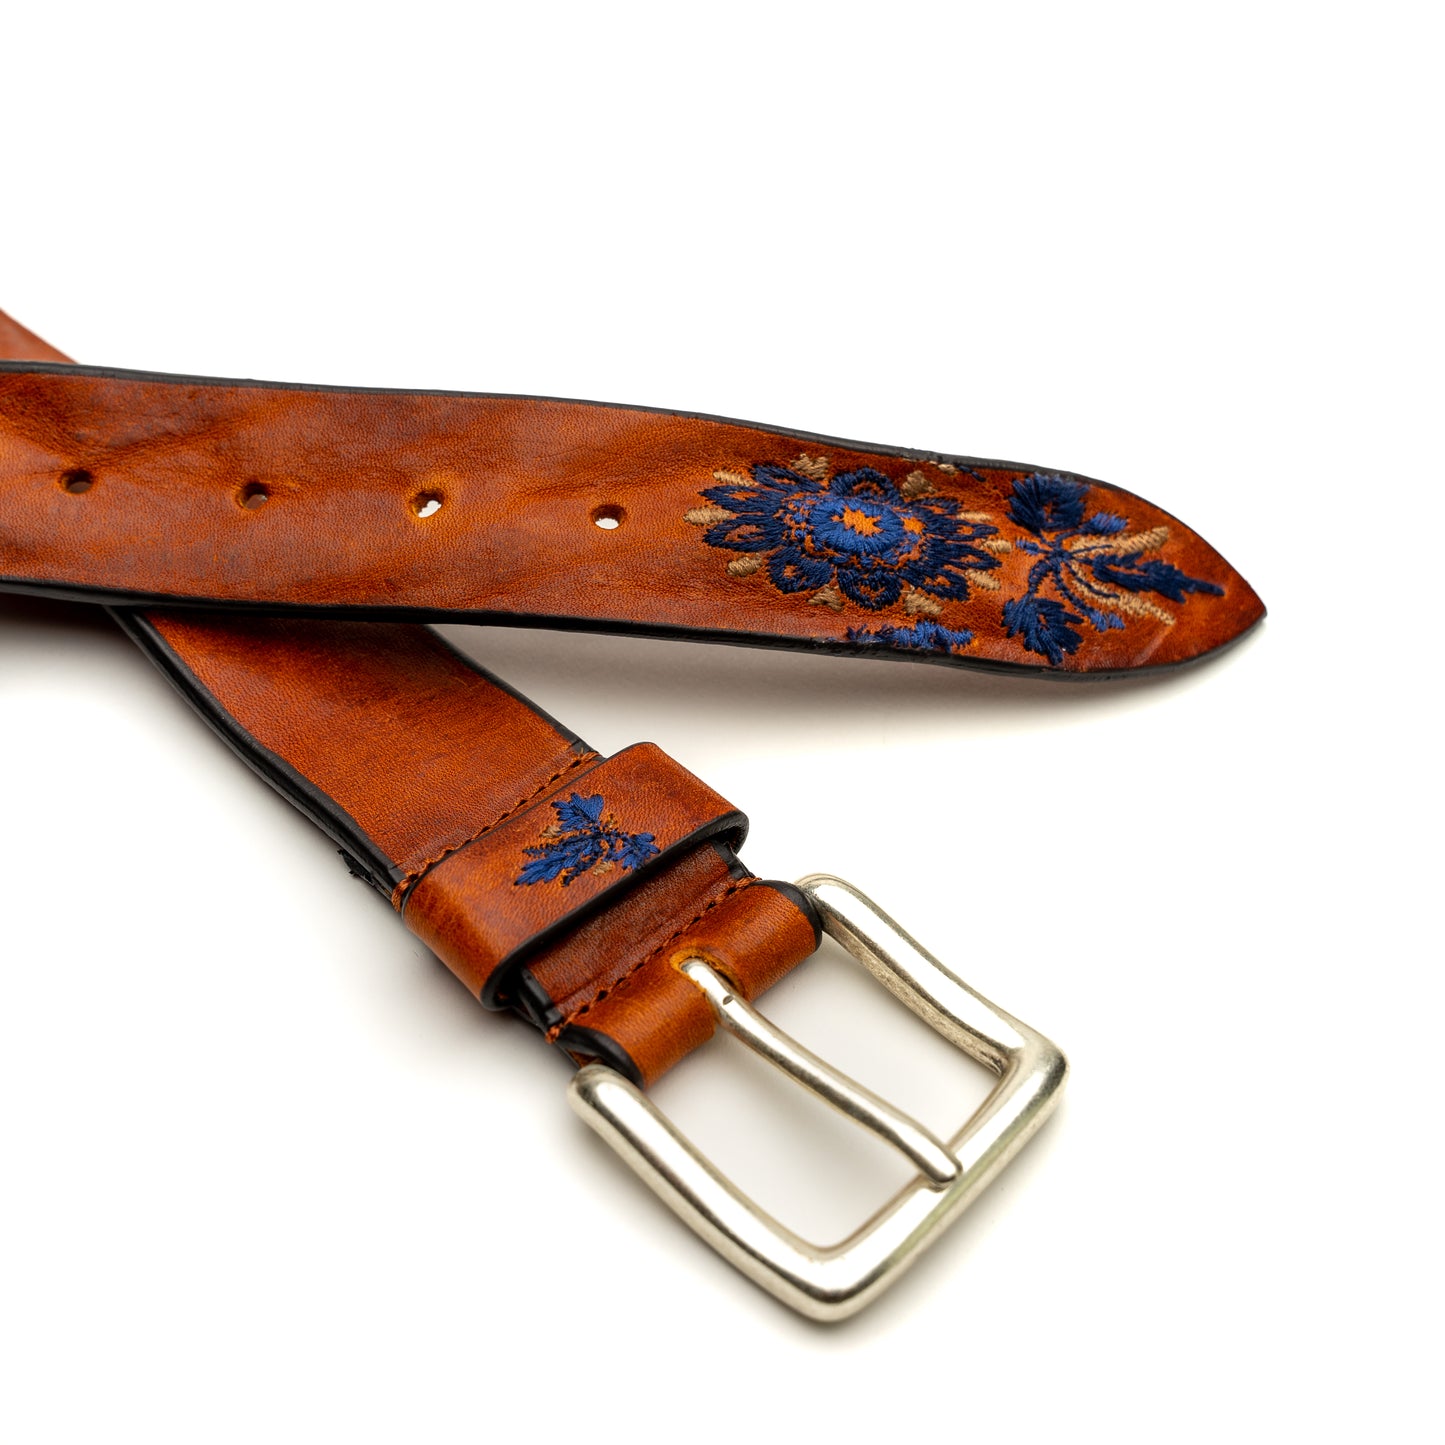 Vintage Floral Blue Leather Belt